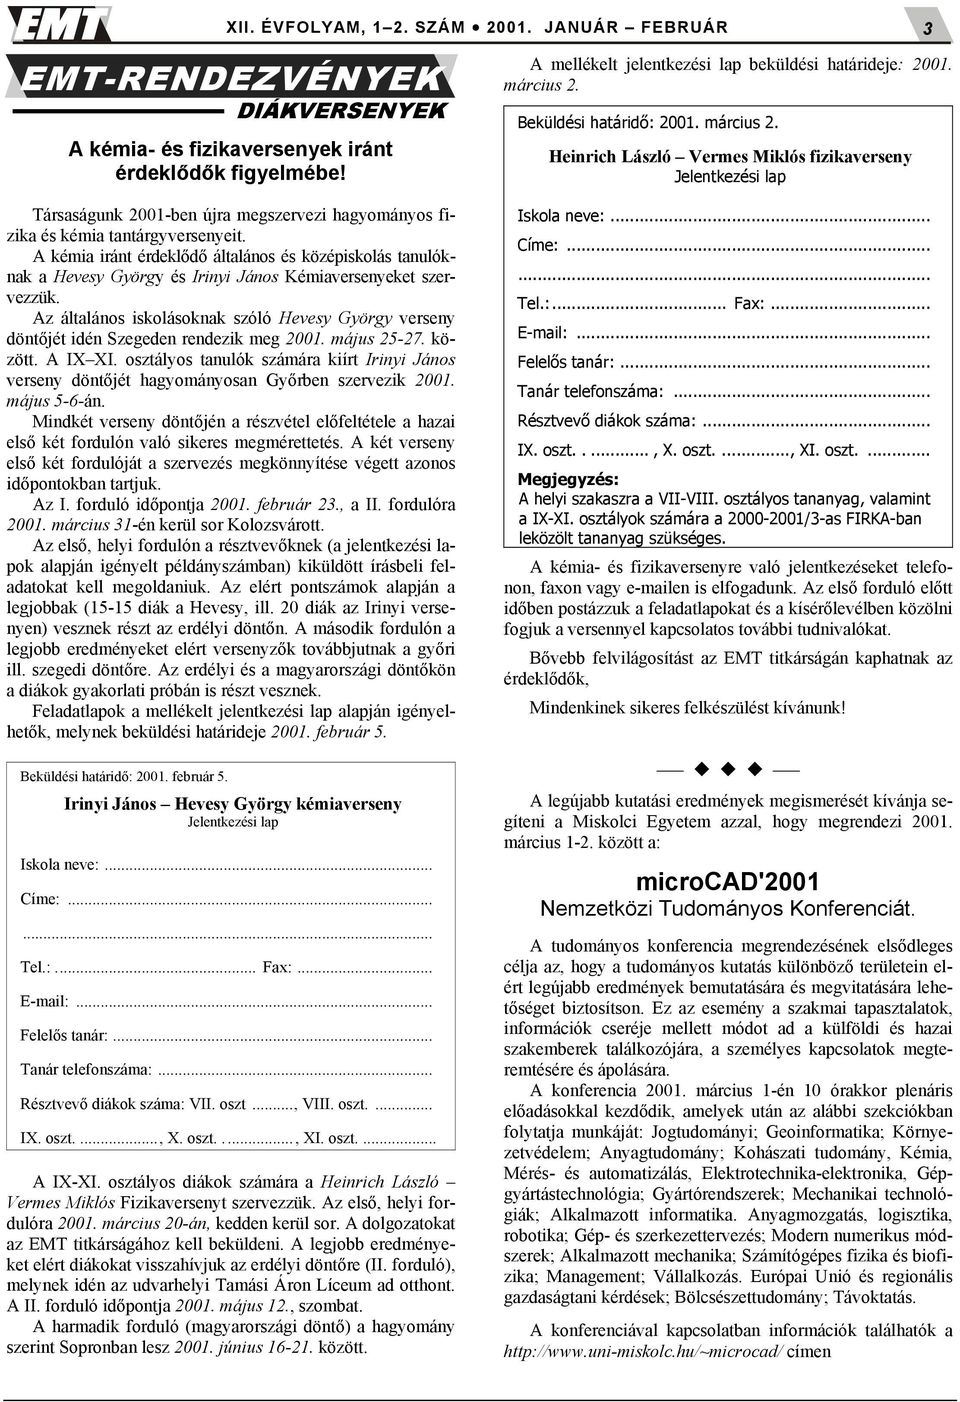 Az általános iskolásoknak szóló Hevesy György verseny dönt$jét idén Szegeden rendezik meg 2001. május 25-27. között. A IX XI.